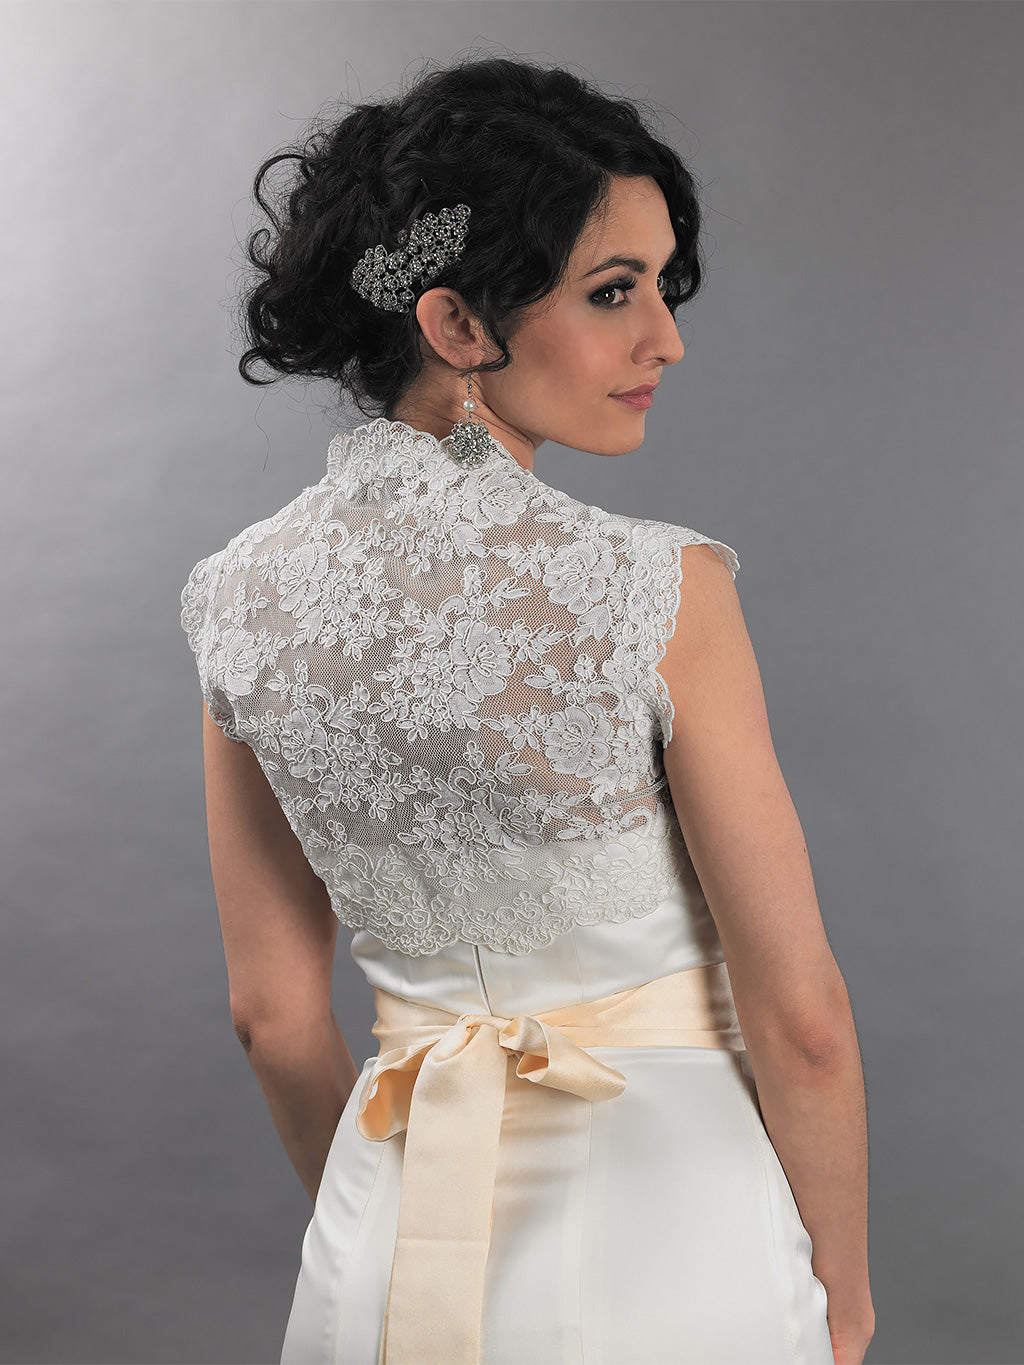 Sleeveless bridal alencon lace bolero jacket